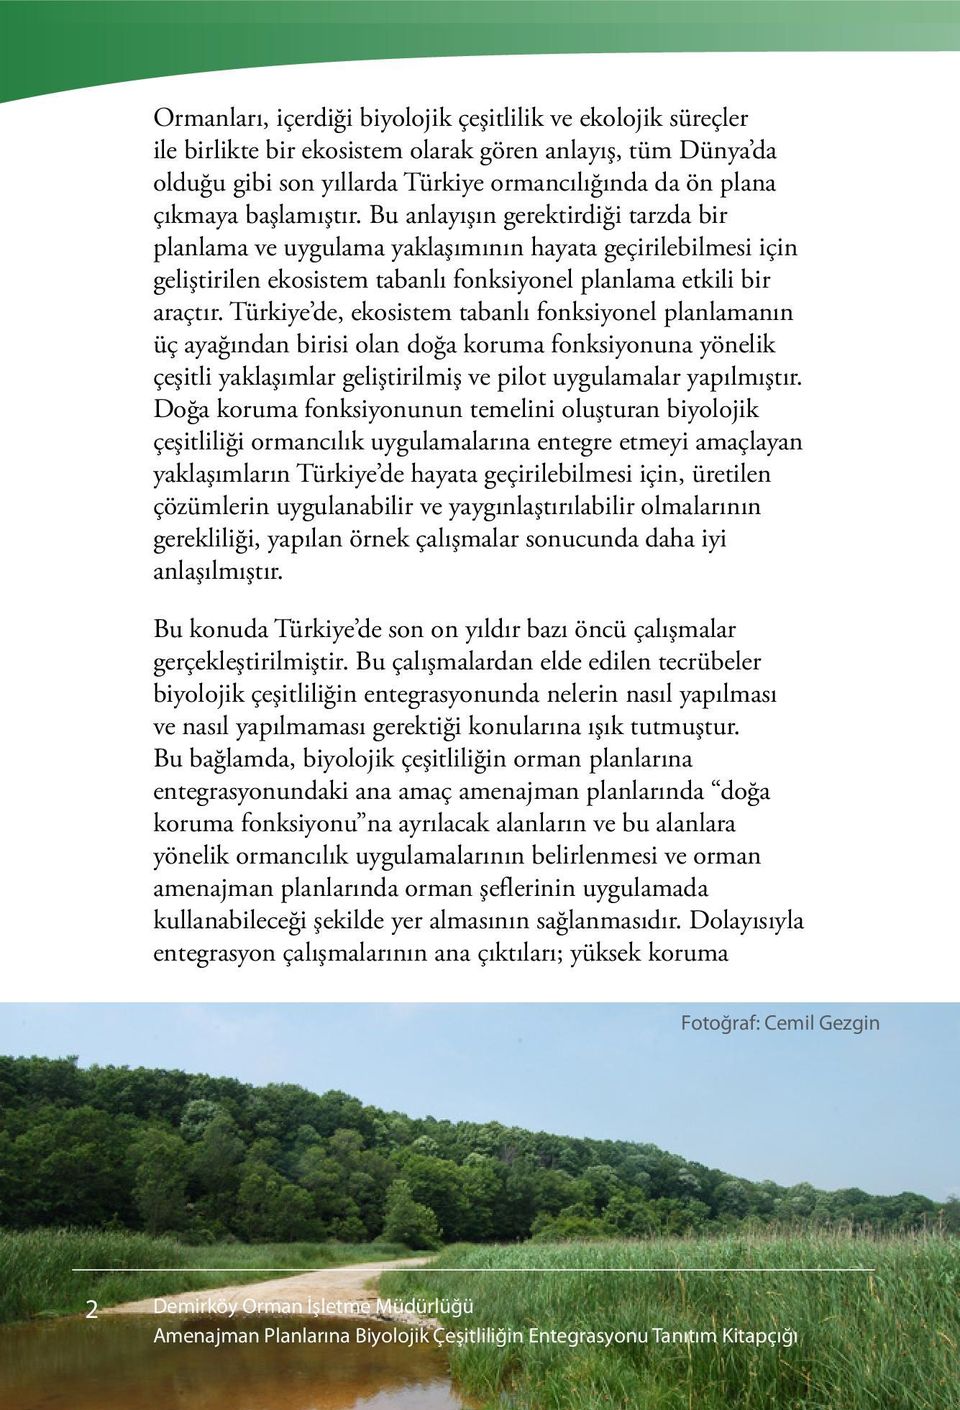 Türkiye de, ekosistem tabanlı fonksiyonel planlamanın üç ayağından birisi olan doğa koruma fonksiyonuna yönelik çeşitli yaklaşımlar geliştirilmiş ve pilot uygulamalar yapılmıştır.